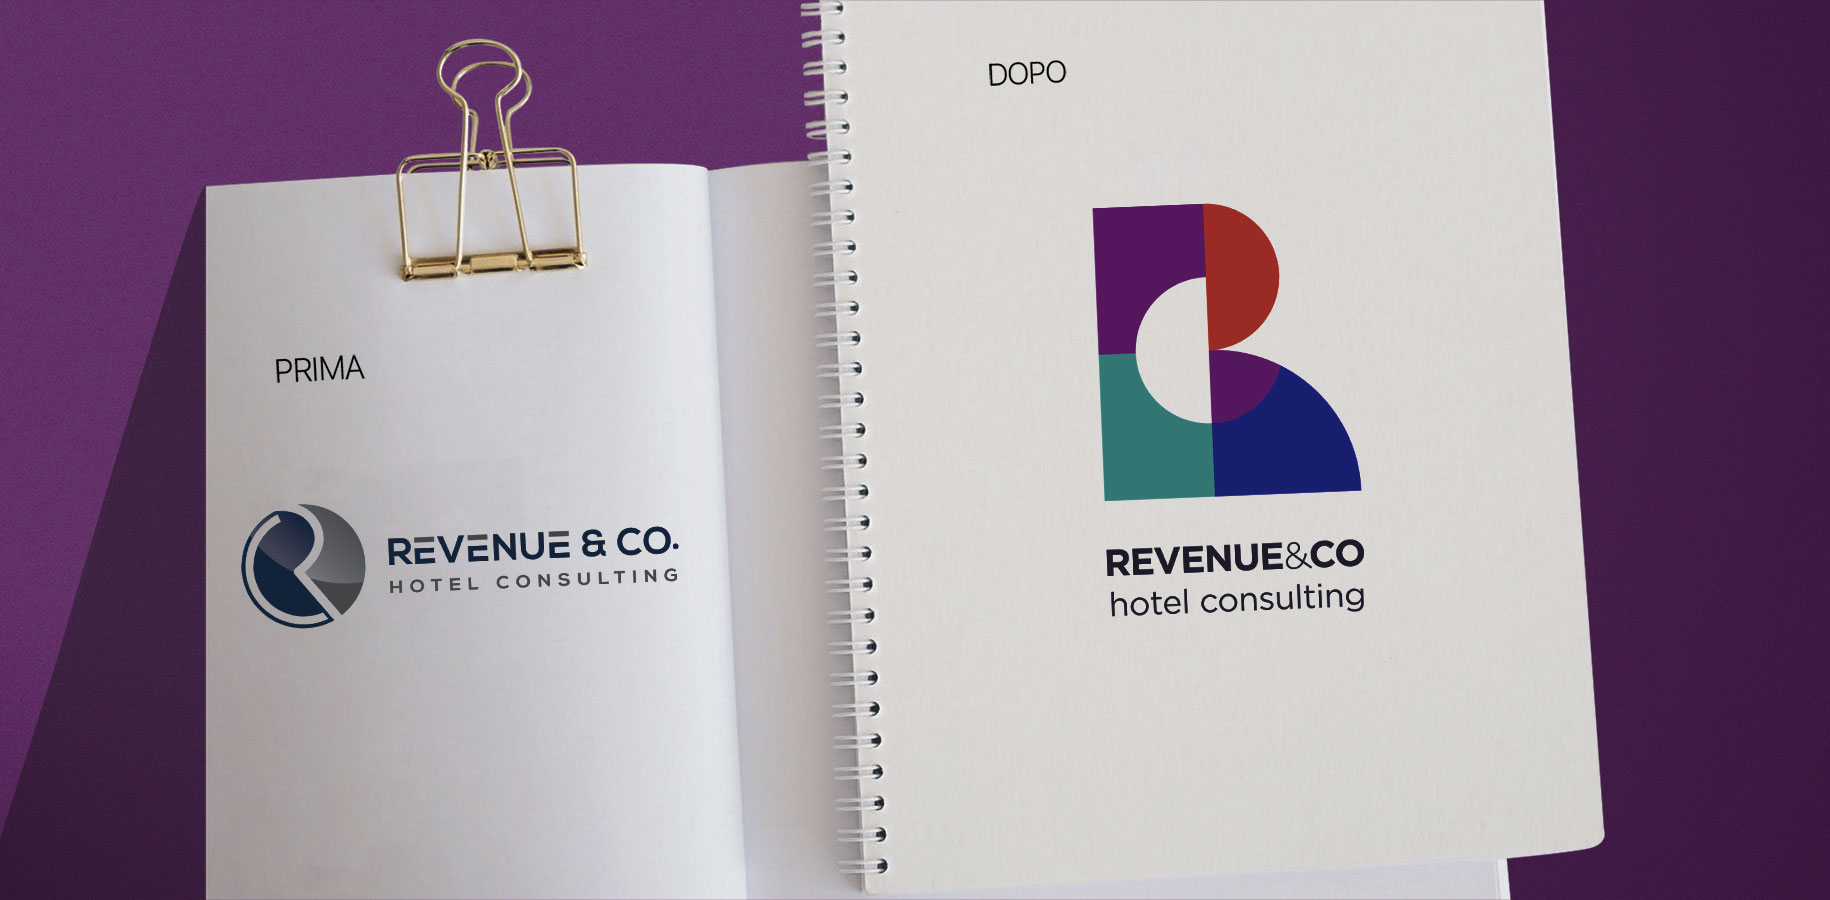 Revenue & Co. - I'M comunicazione